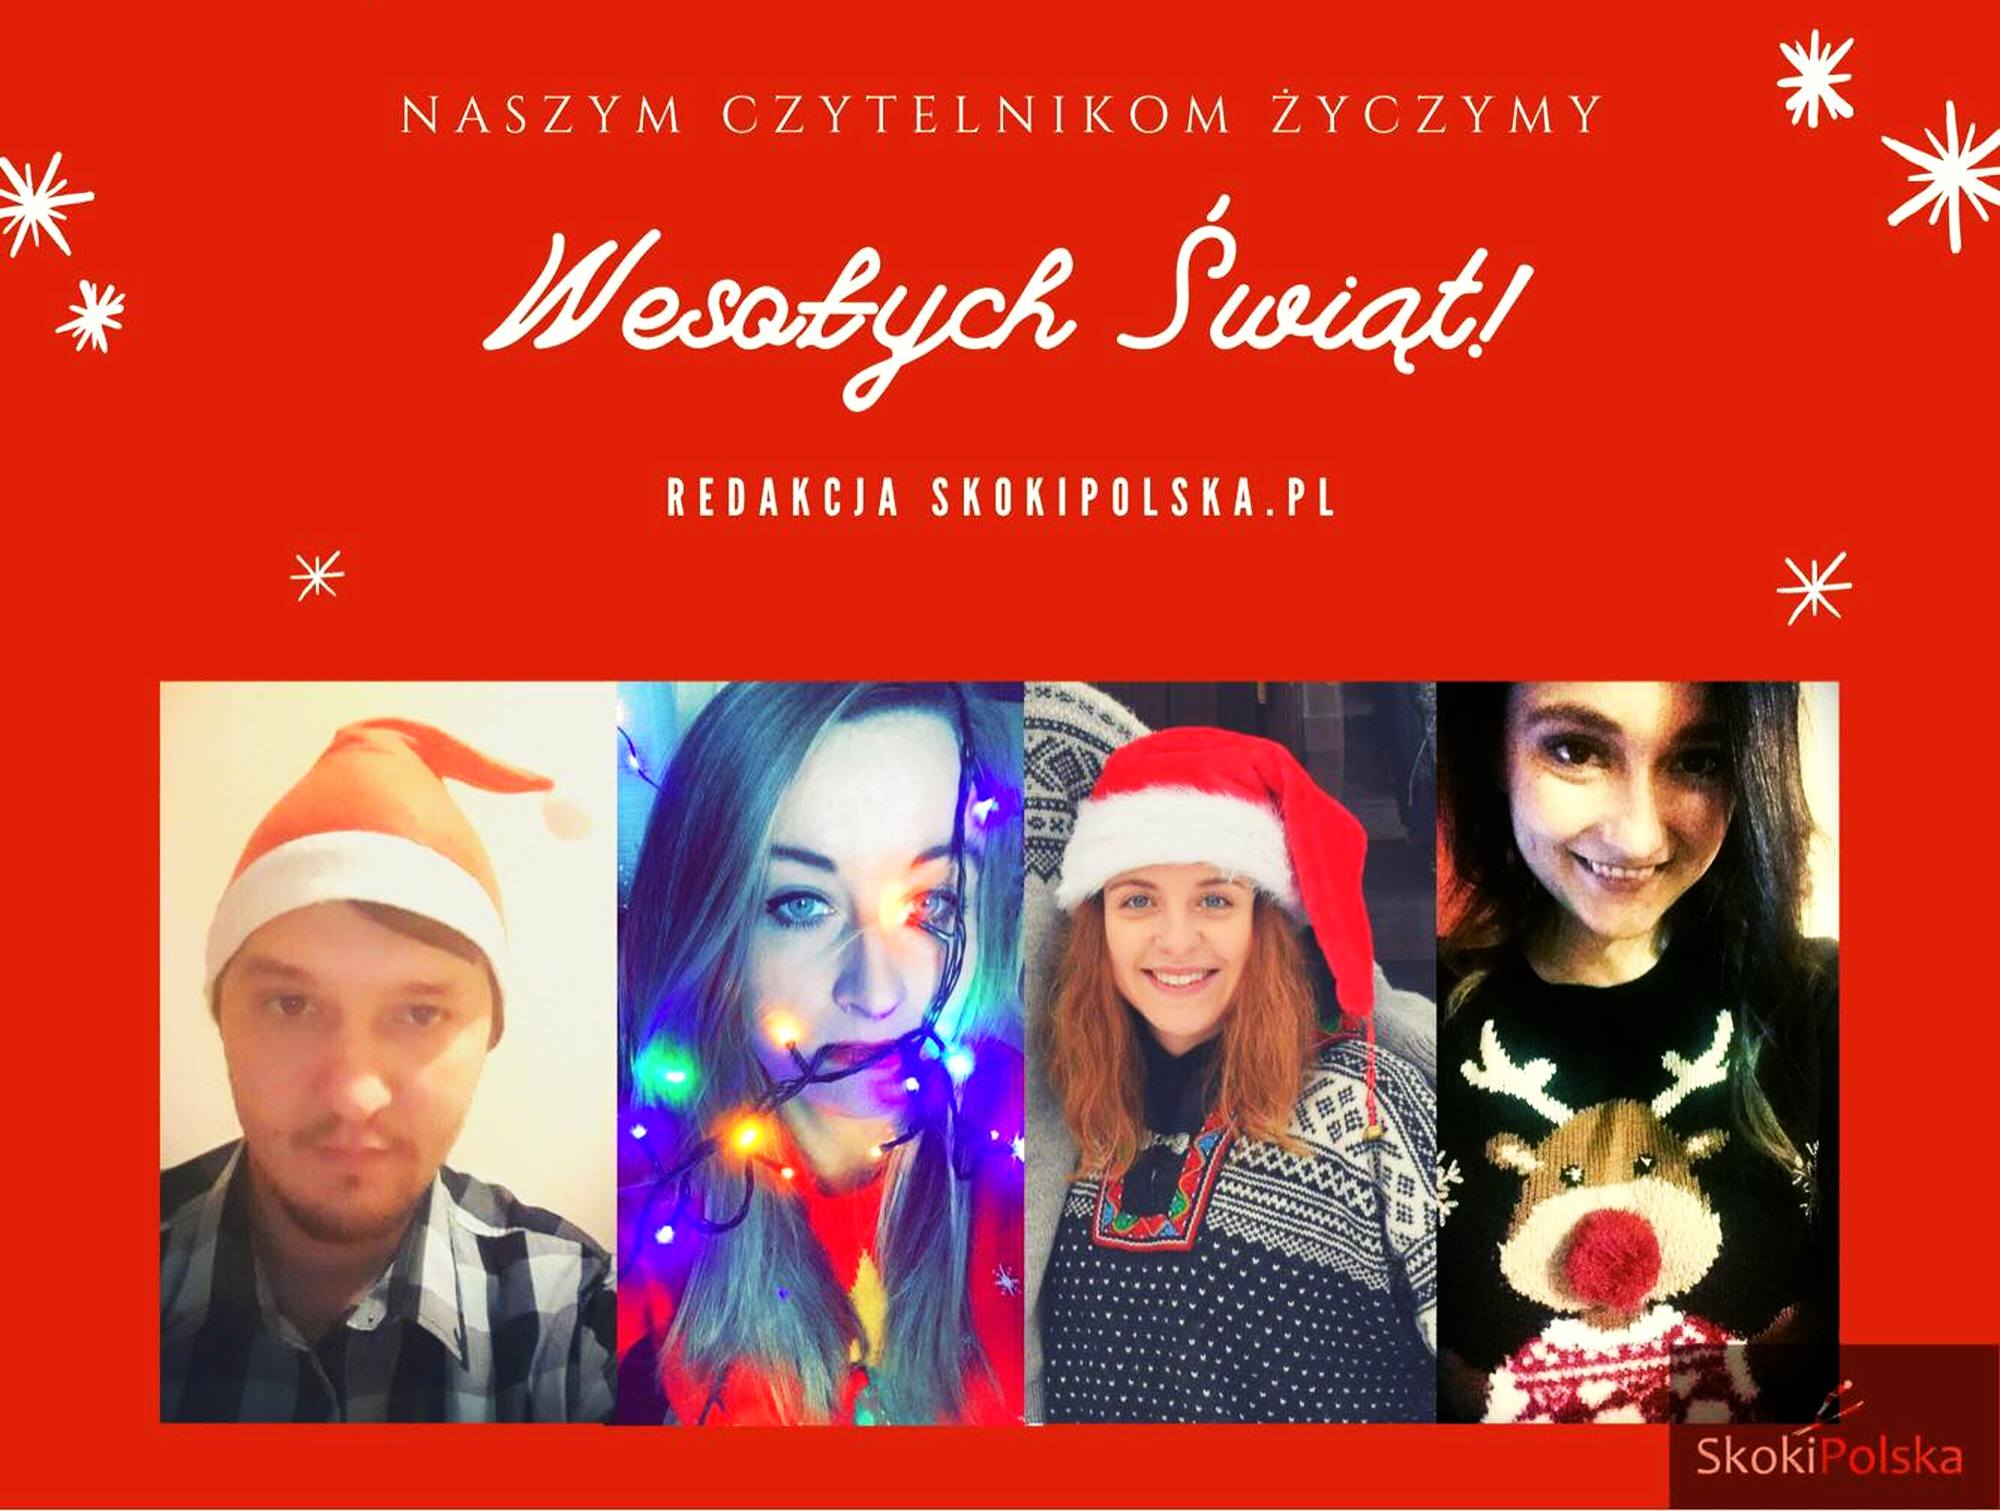 You are currently viewing Wesołych Świąt Bożego Narodzenia!